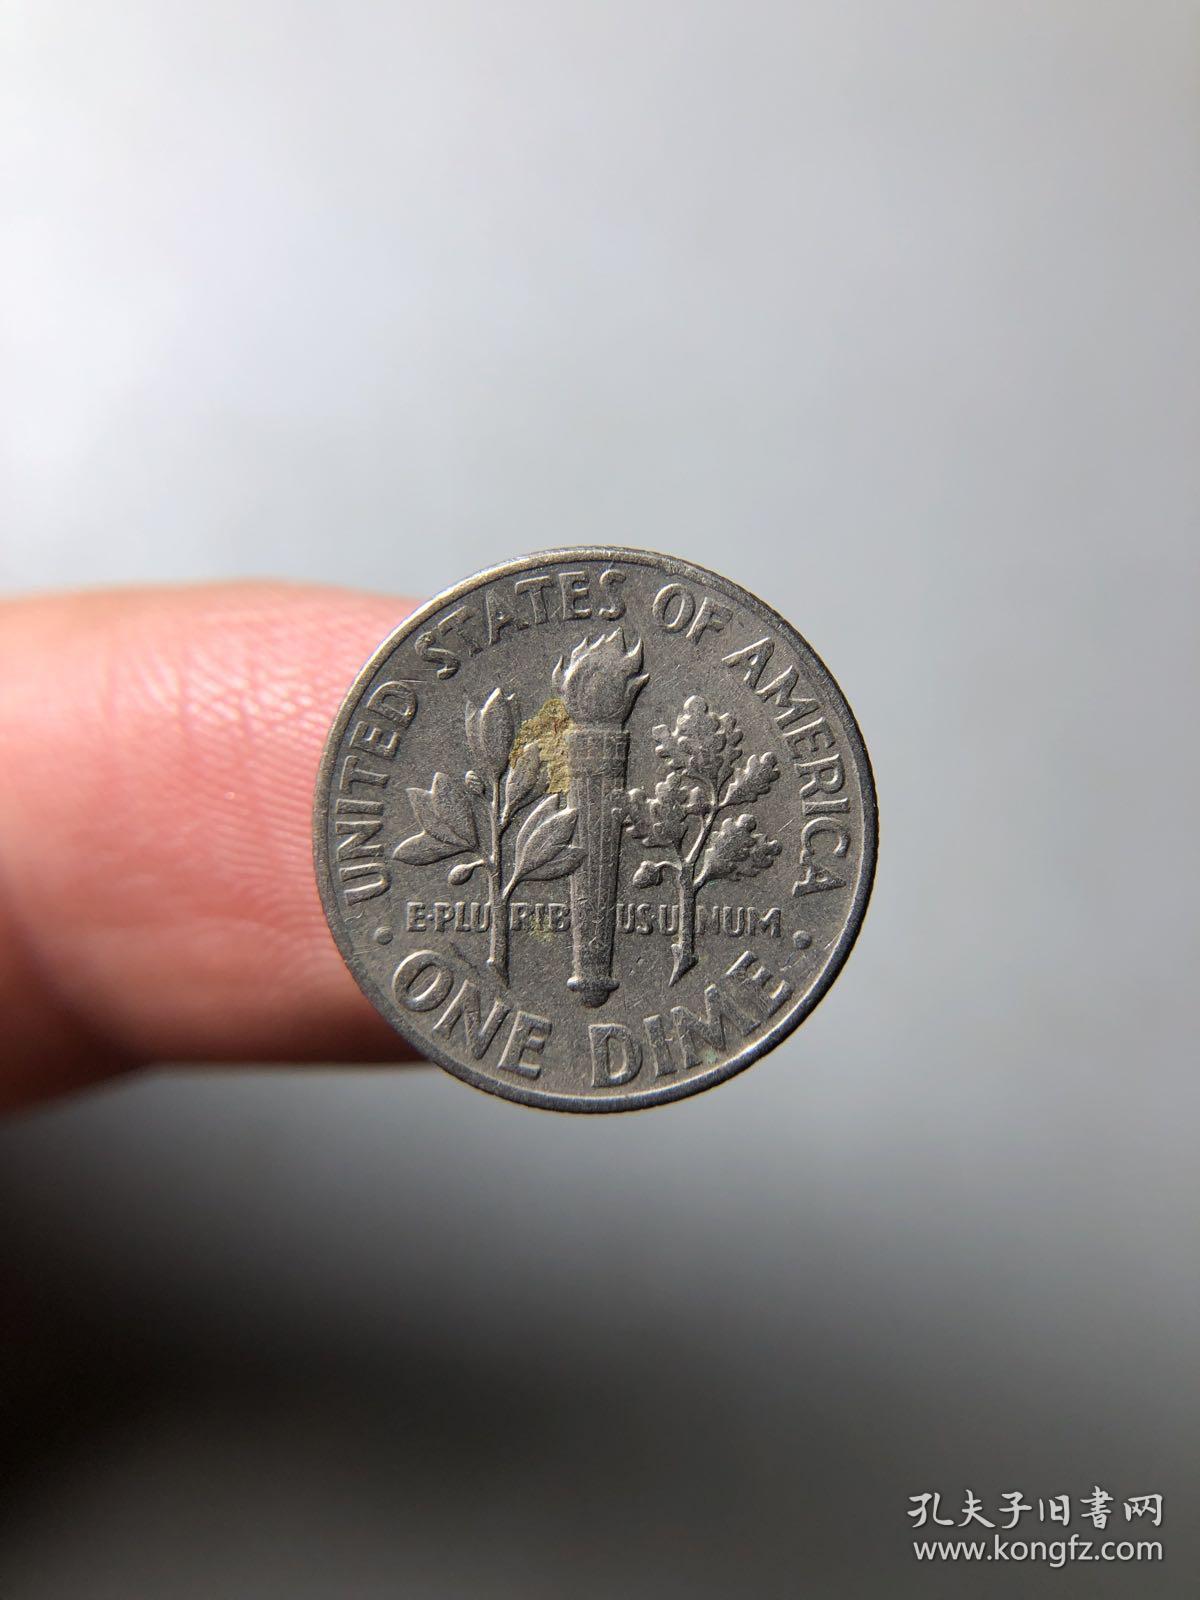 1965年外国硬币